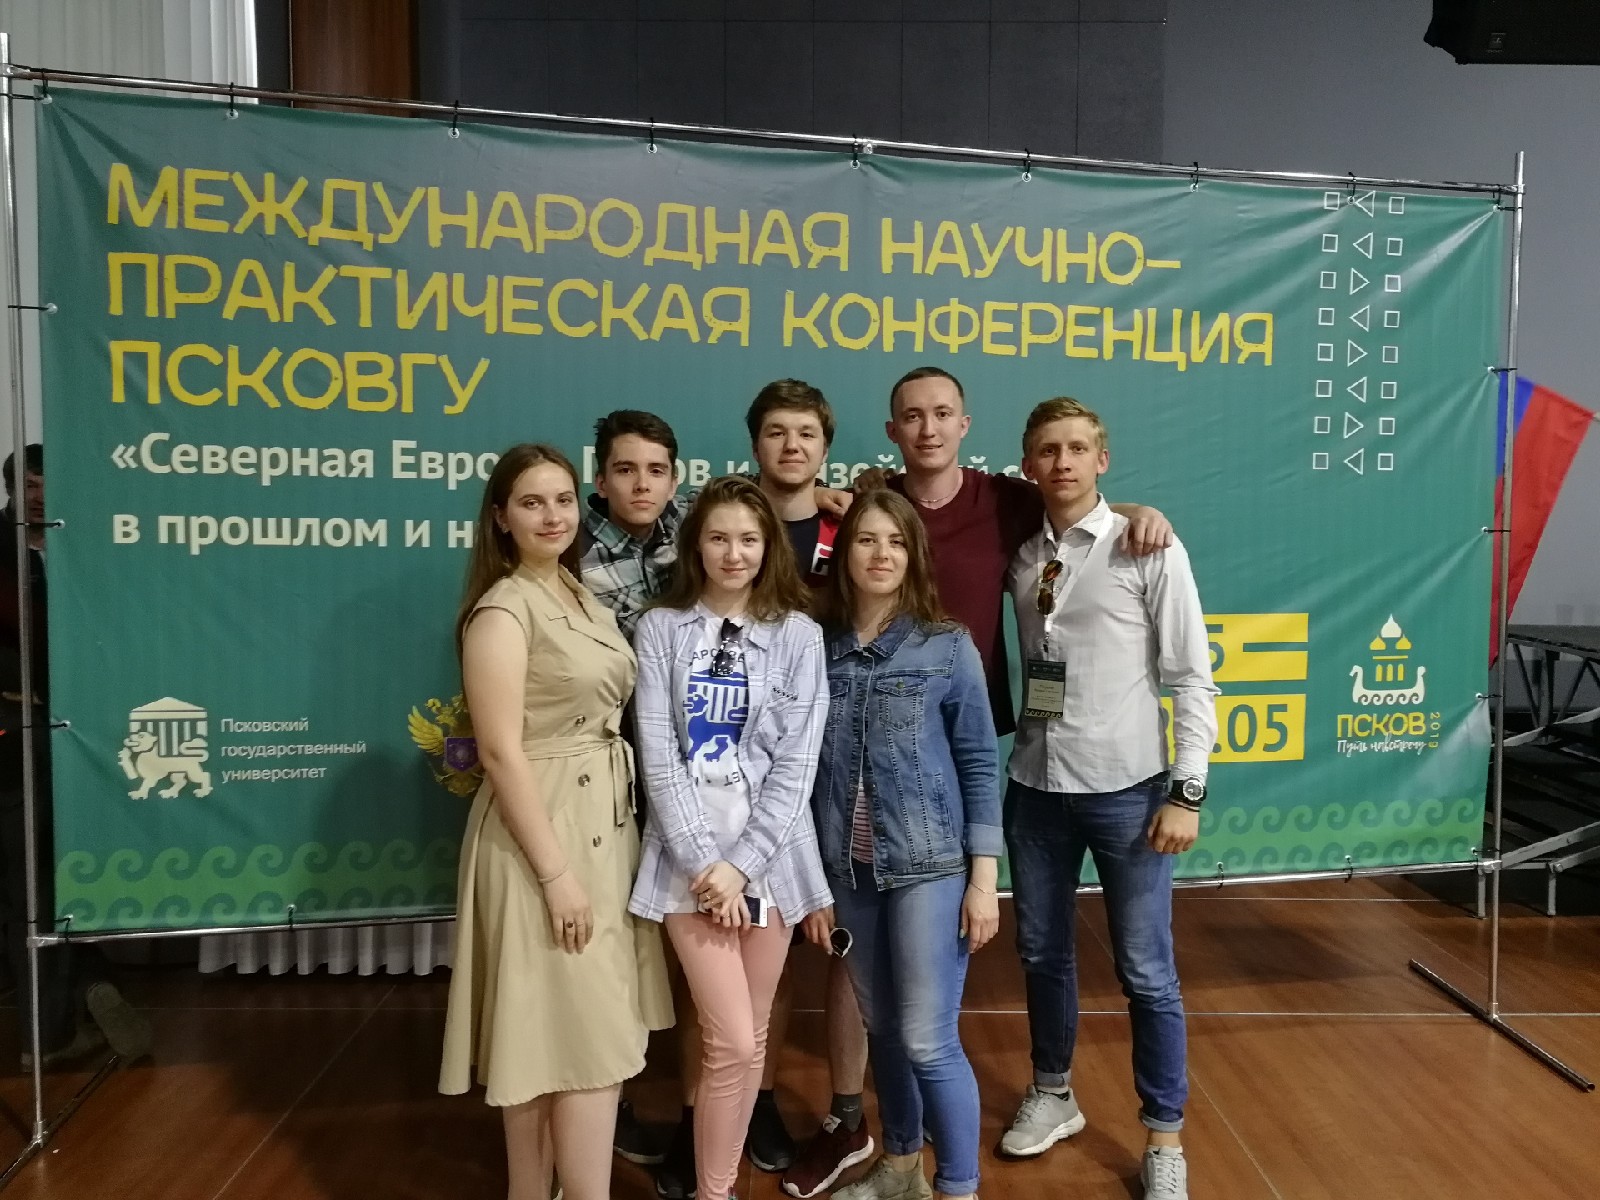 Студенты СГУ им. Питирима Сорокина обсудили экономику регионов на конференции в Пскове